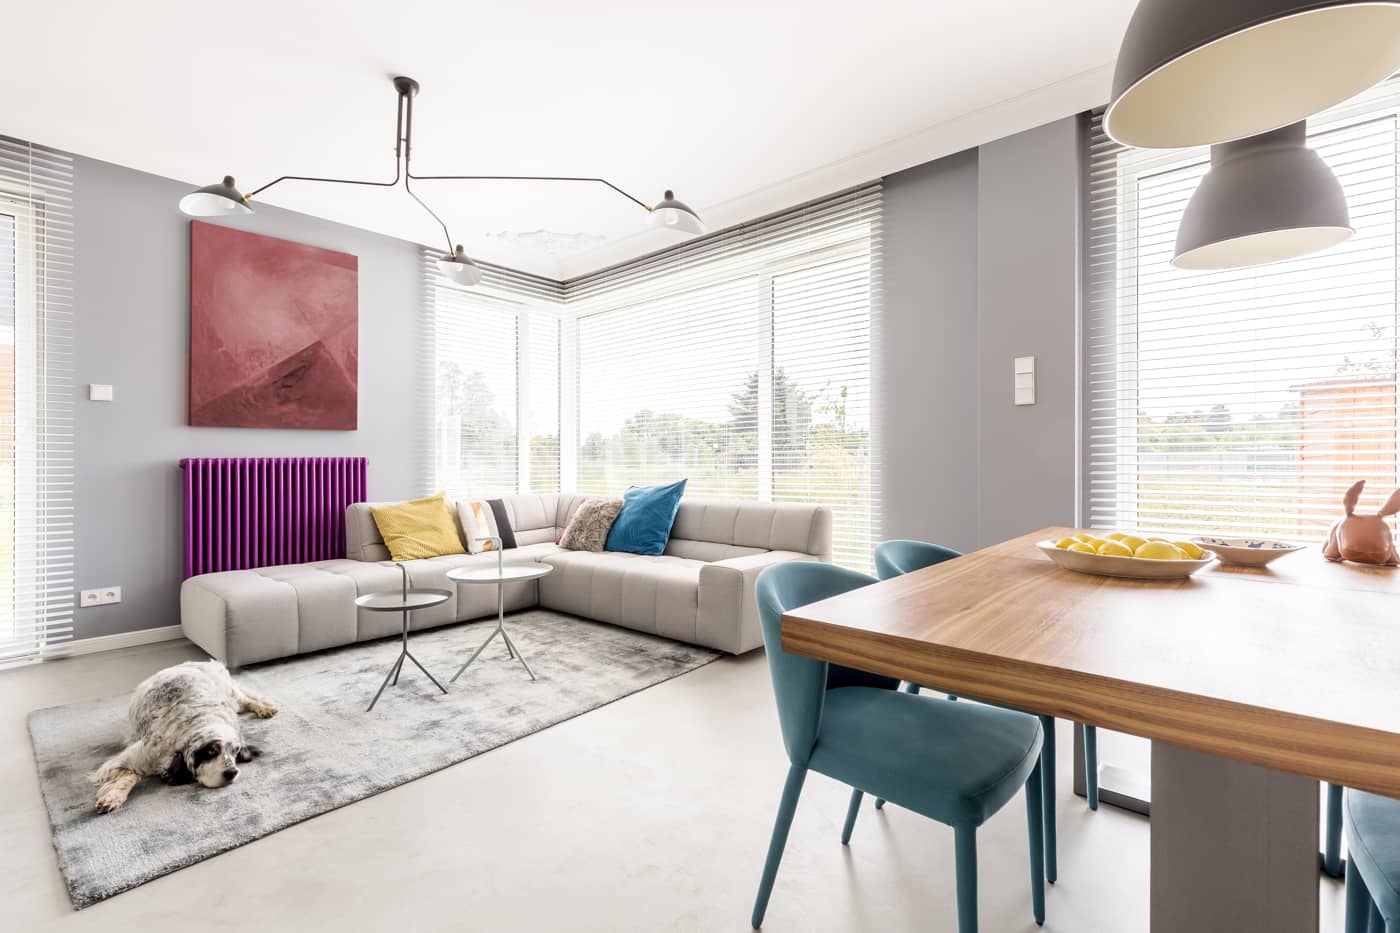 Locuință cu salon modern cu microciment pe podea și pereți